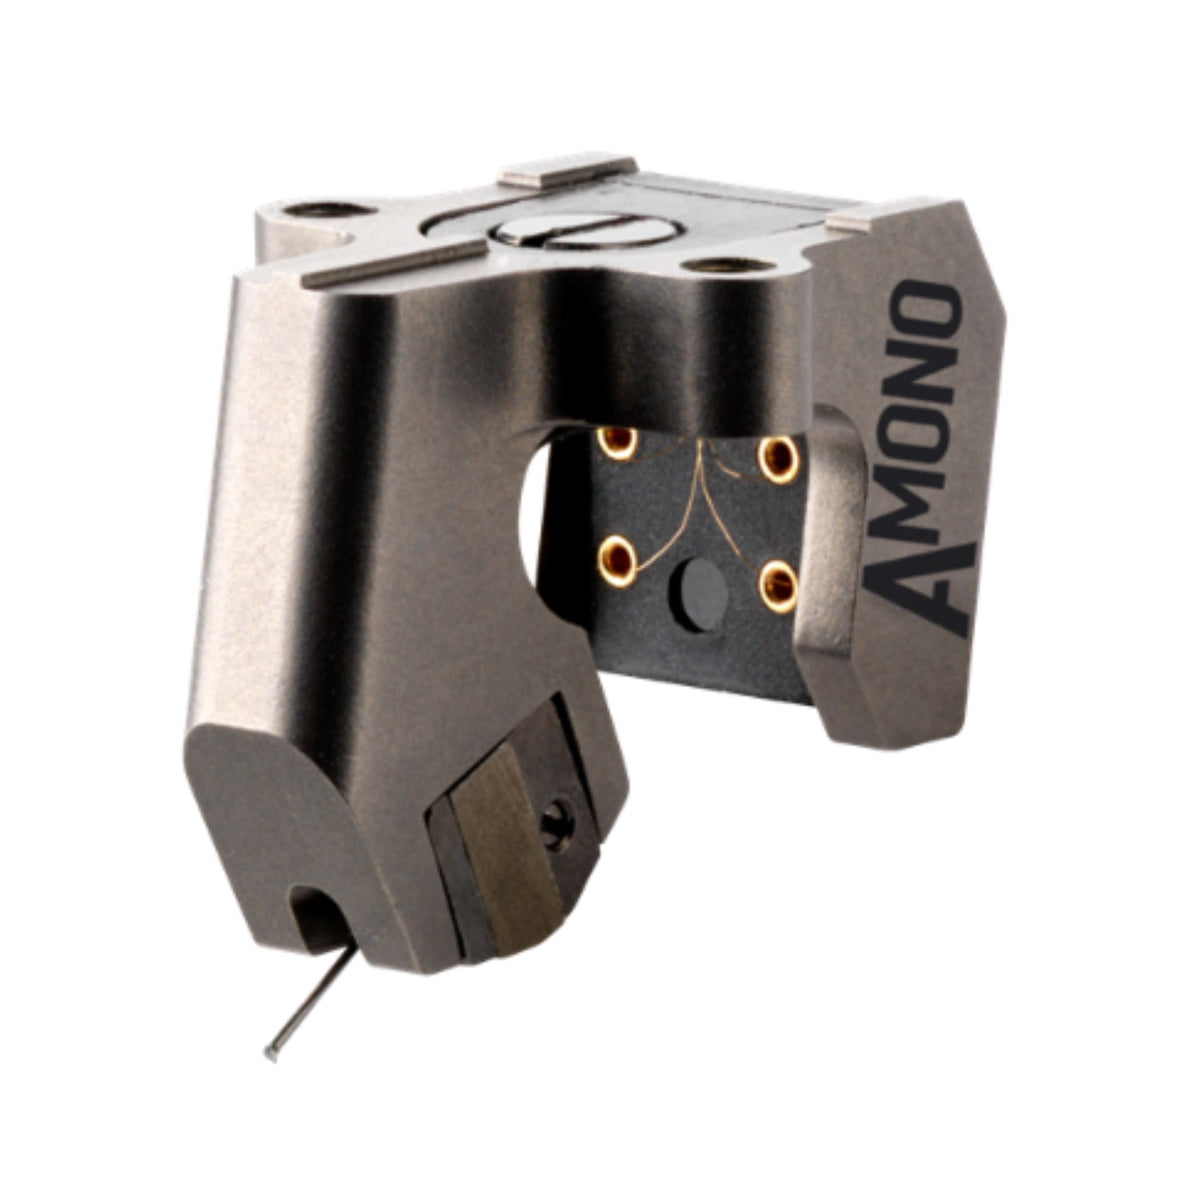 Ortofon MC A Mono - A Moving Coil Cartridge, Ortofon, Turntable Accessories - AVStore.in